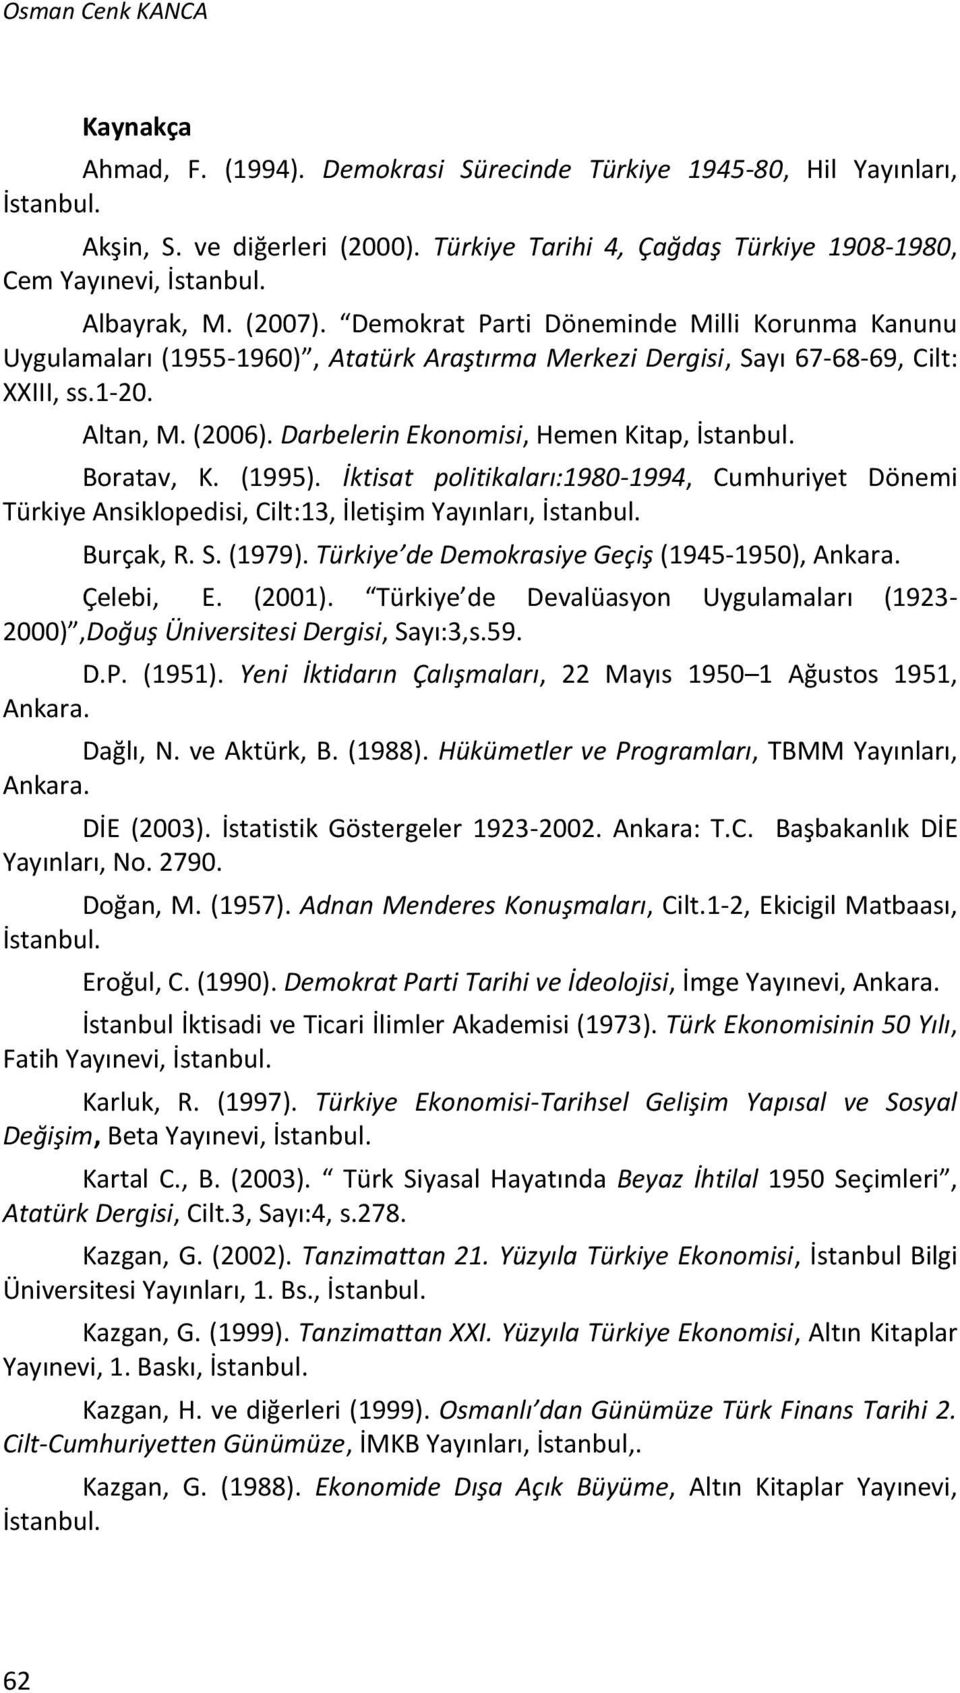 Demokrat Parti Döneminde Milli Korunma Kanunu Uygulamaları (1955-1960), Atatürk Araştırma Merkezi Dergisi, Sayı 67-68-69, Cilt: XXIII, ss.1-20. Altan, M. (2006).